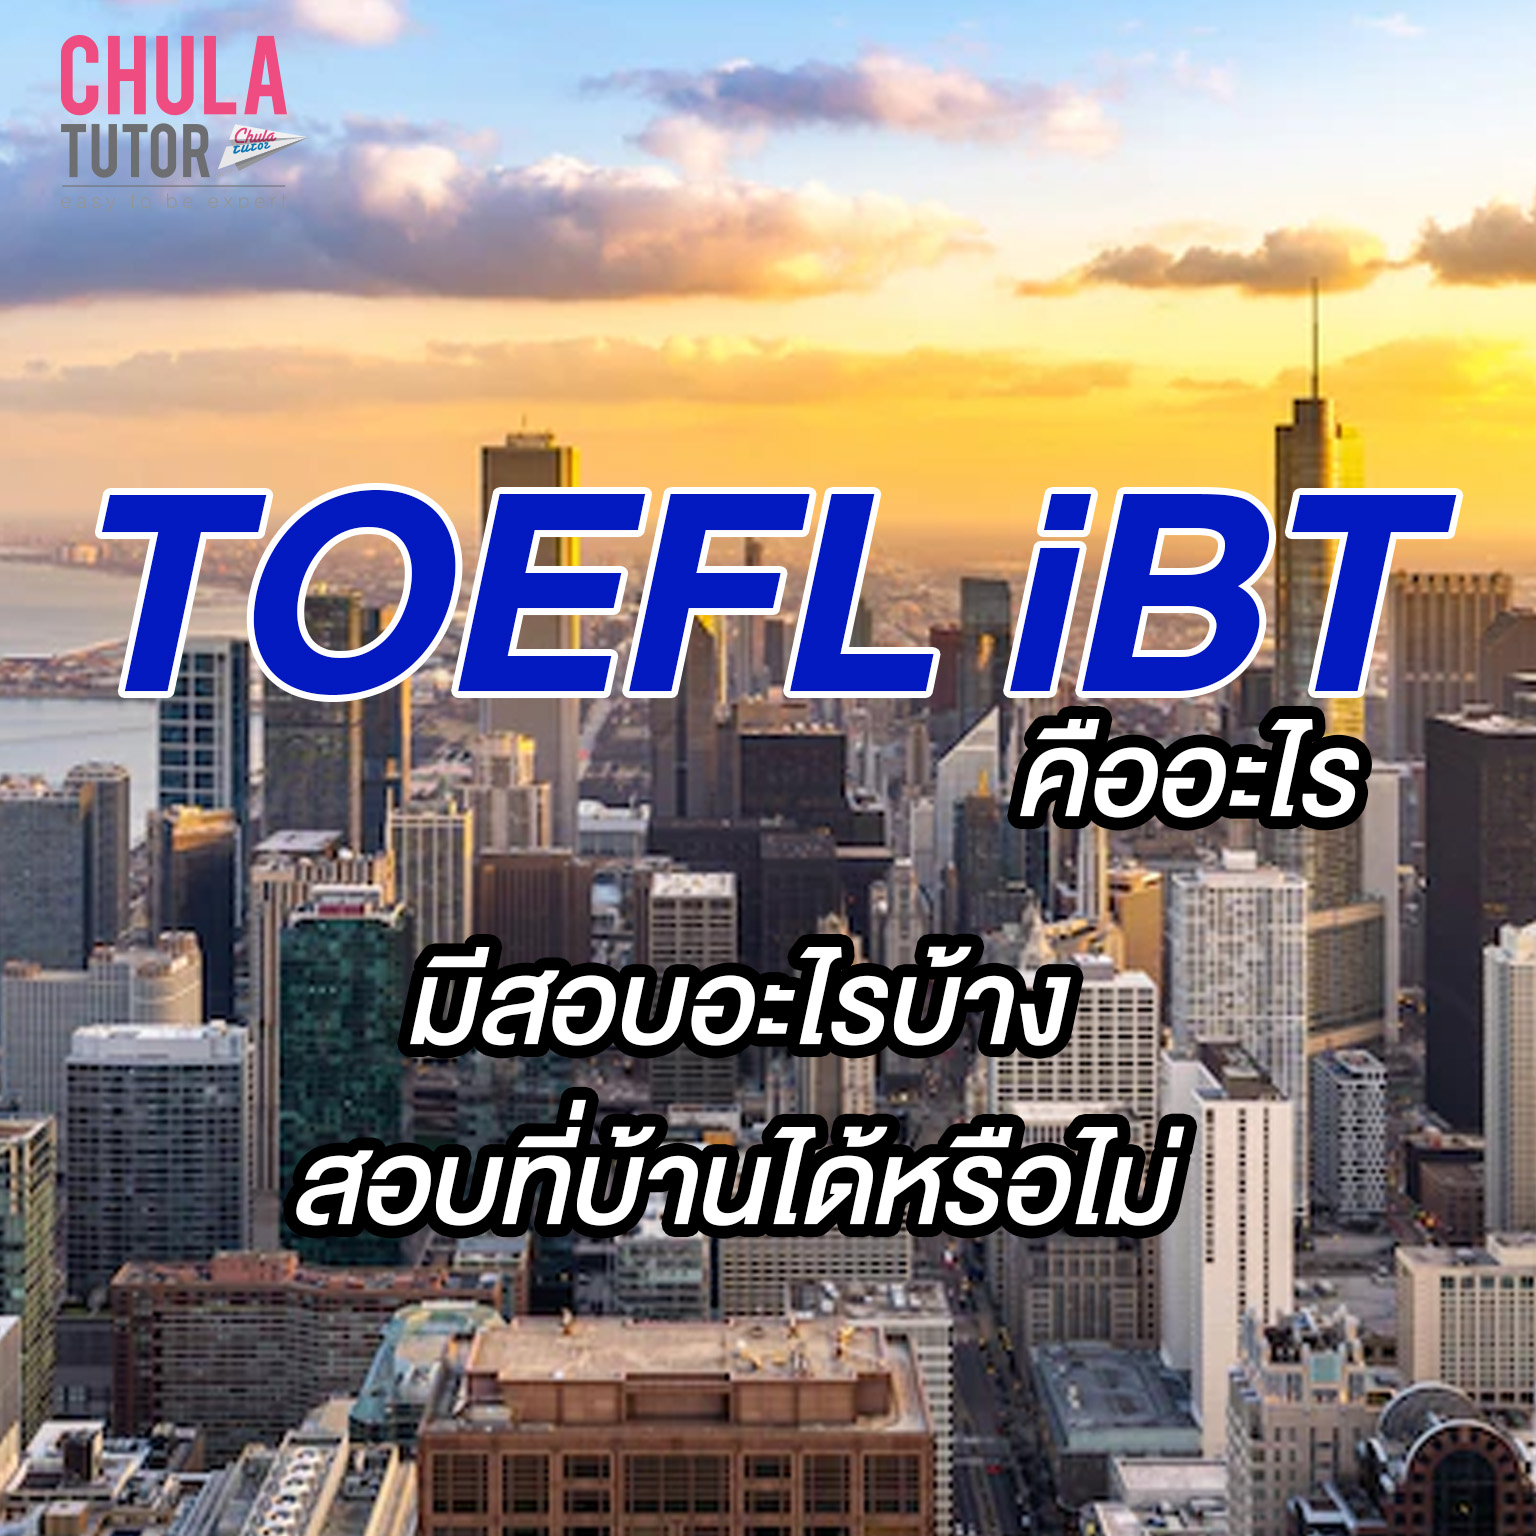 TOEFL IBT คืออะไร มีสอบอะไรบ้าง สอบที่บ้านได้หรือไม่